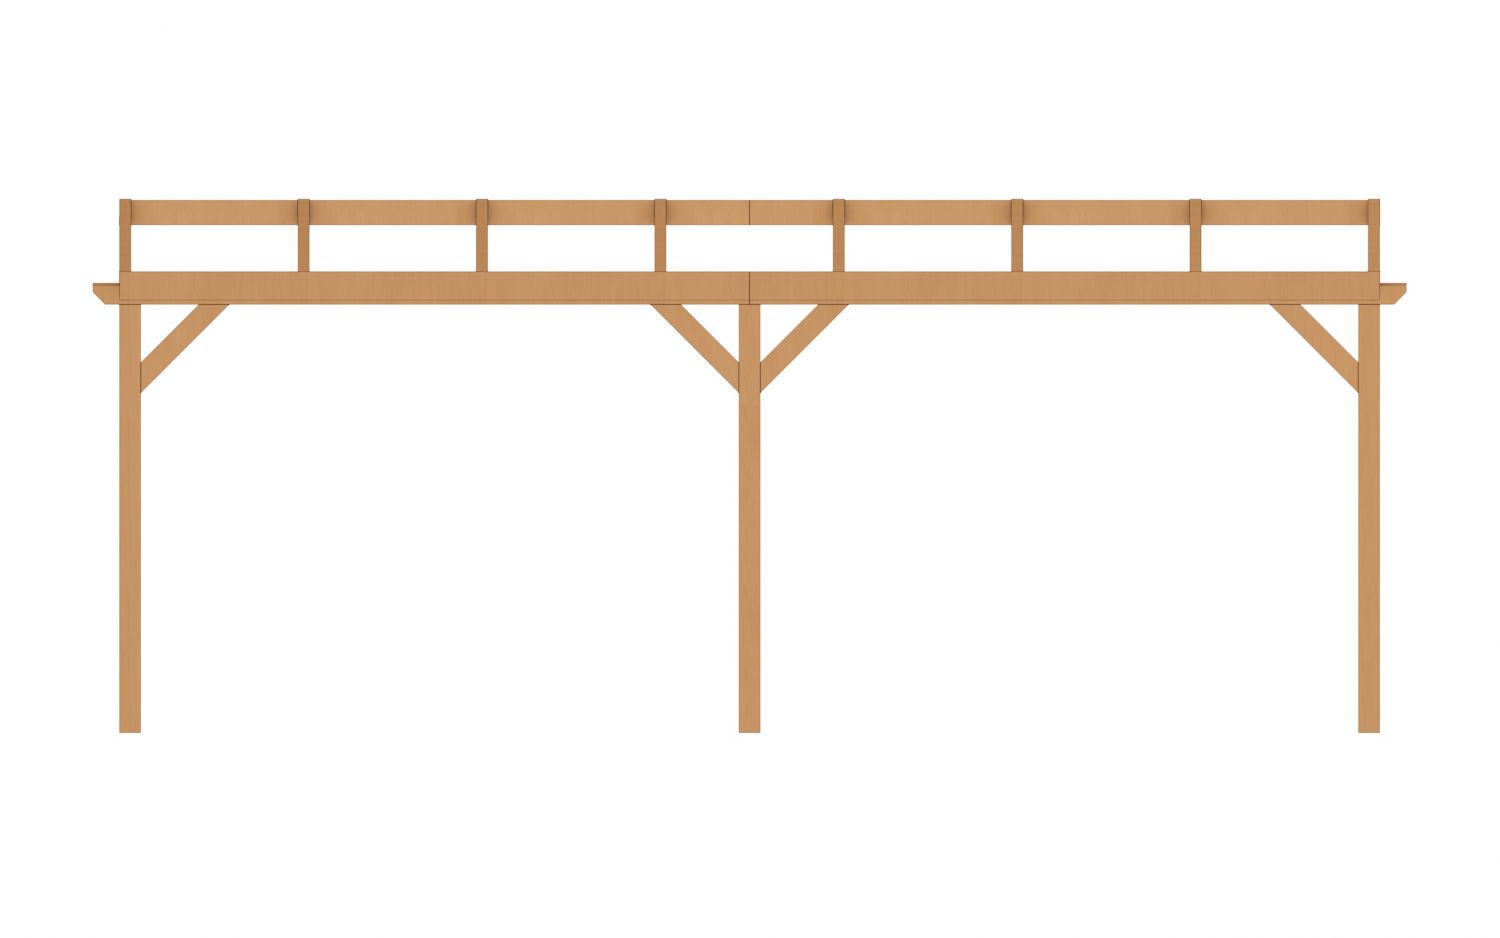 Aanbouw veranda Oblique schuin dak - 700 x 300 cm - Polycarbonaat